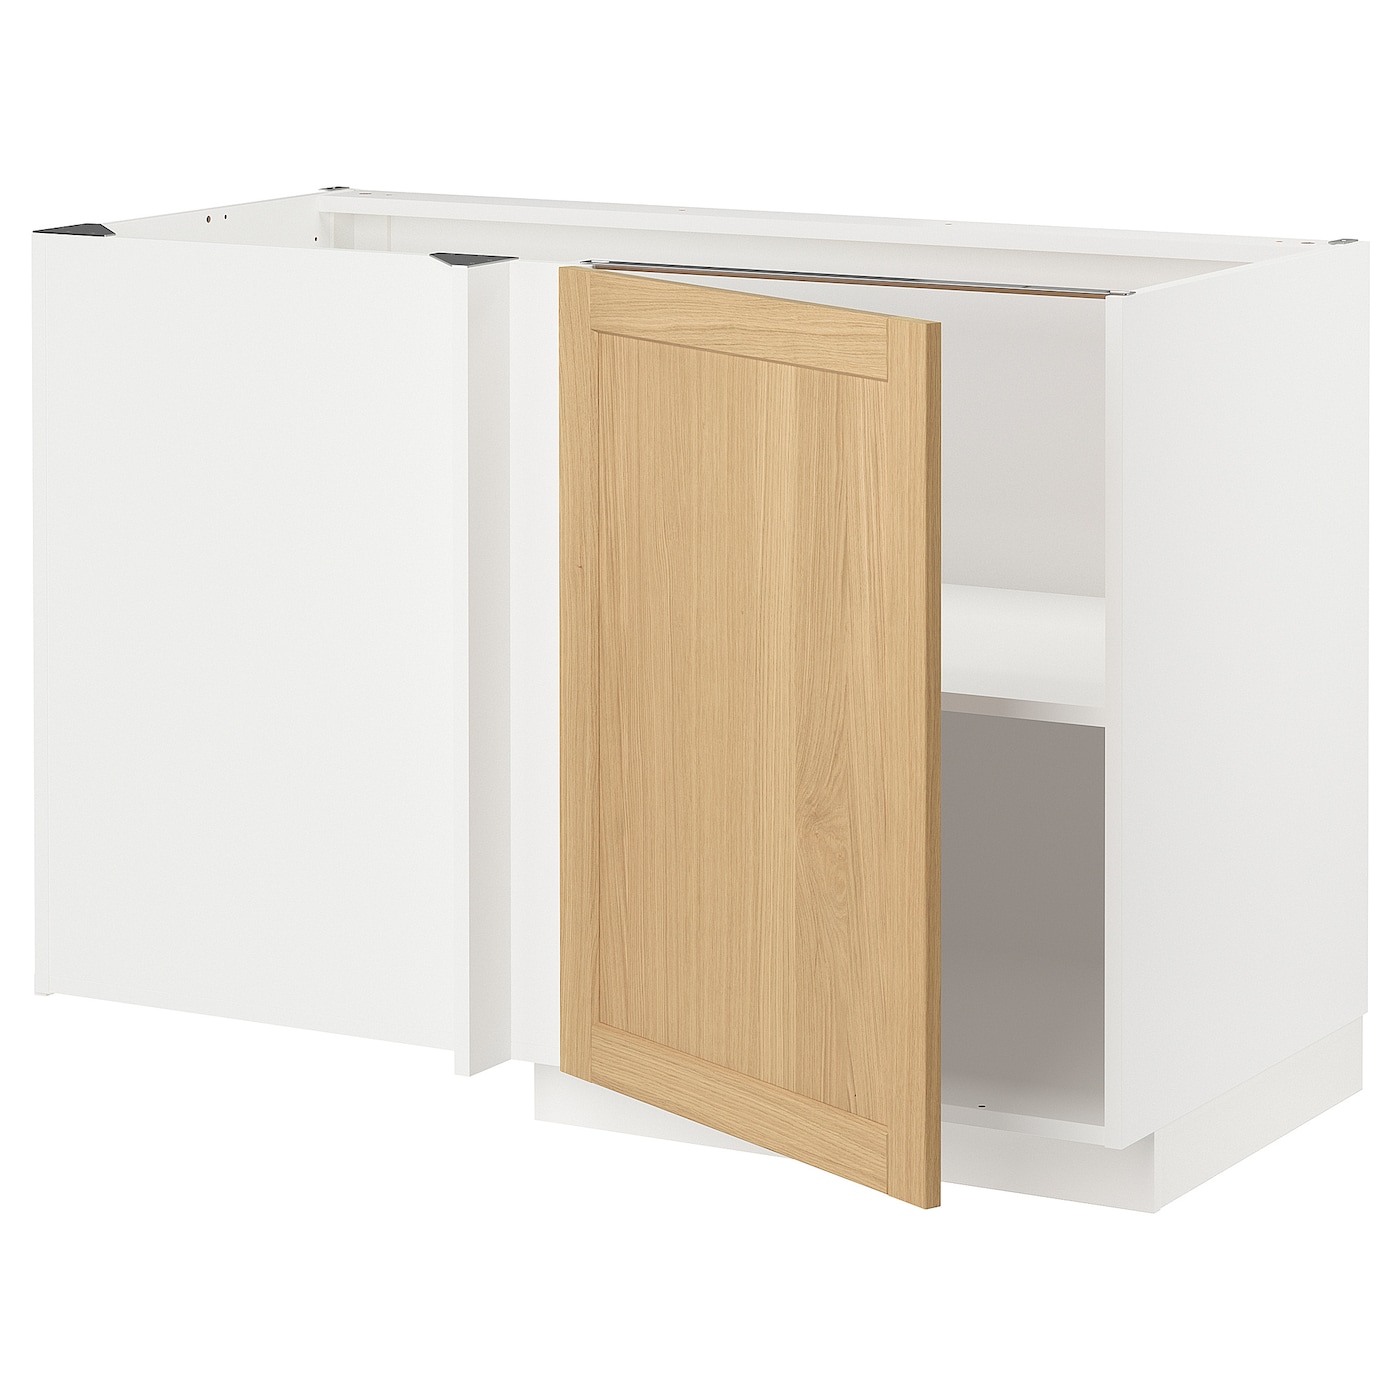 Напольный шкаф - METOD IKEA/ МЕТОД ИКЕА,  128х68 см, белый/под беленый дуб